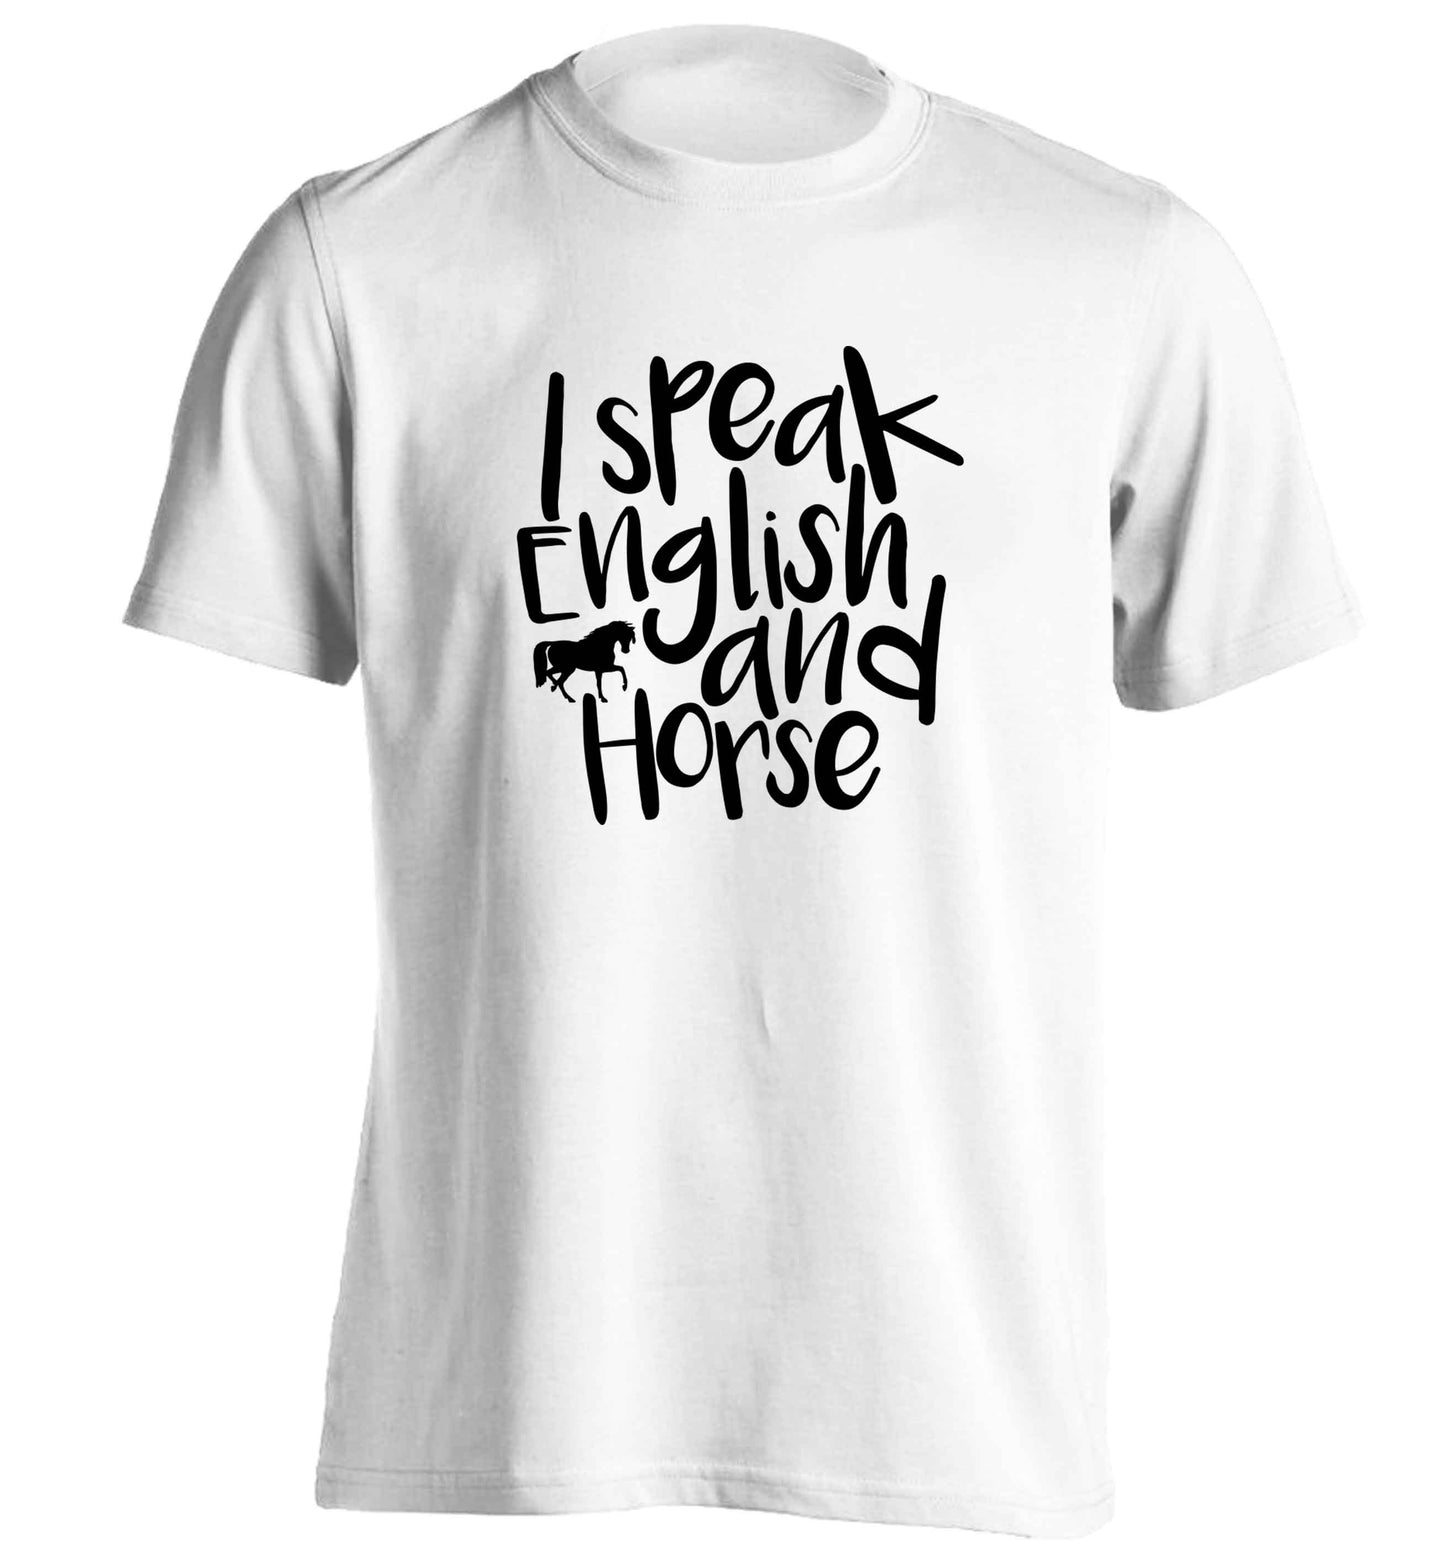 I speak English and horse adults unisex white Tshirt 2XL